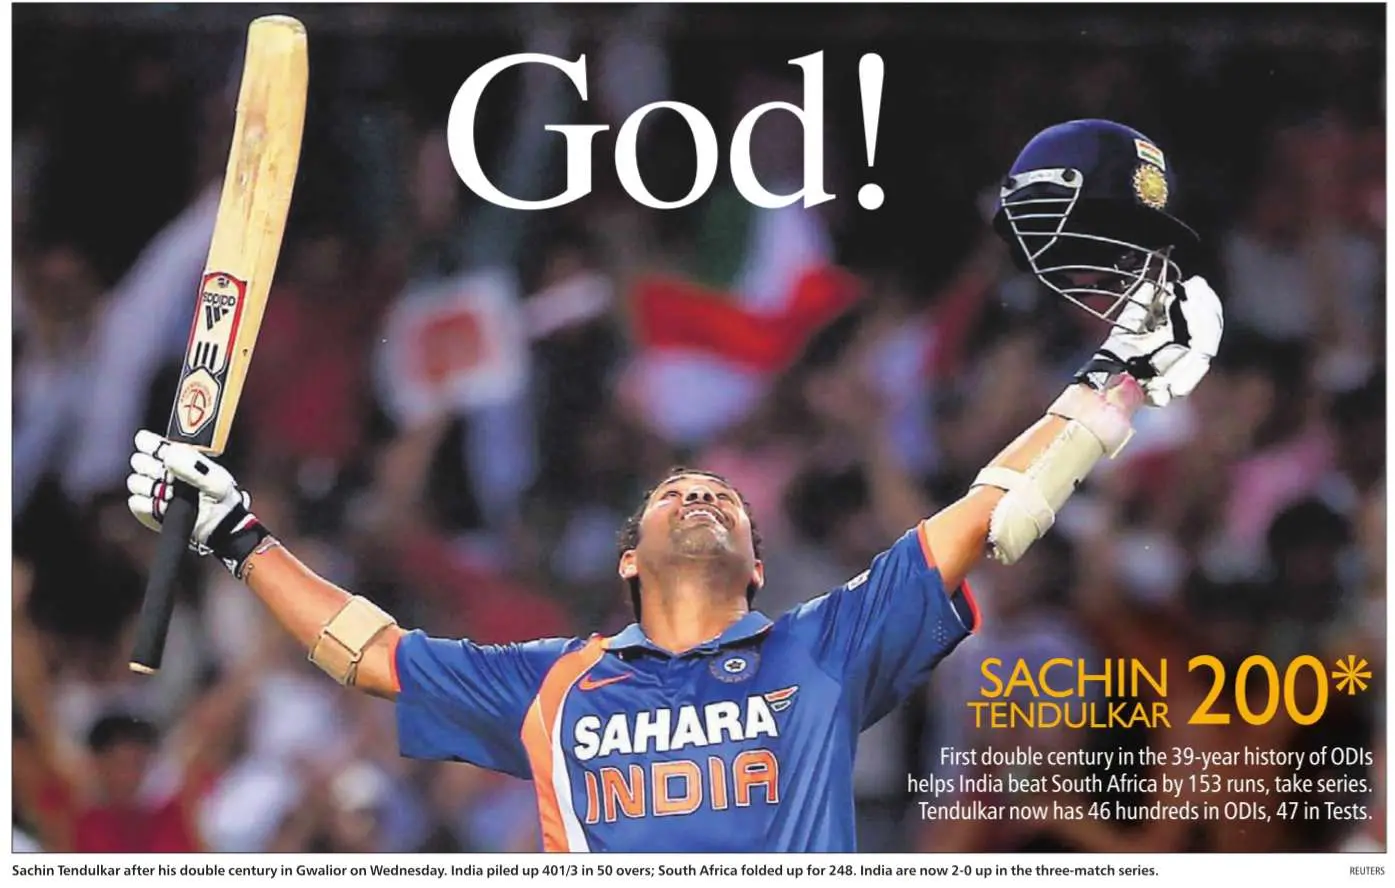 Sachin Tendulkar is God